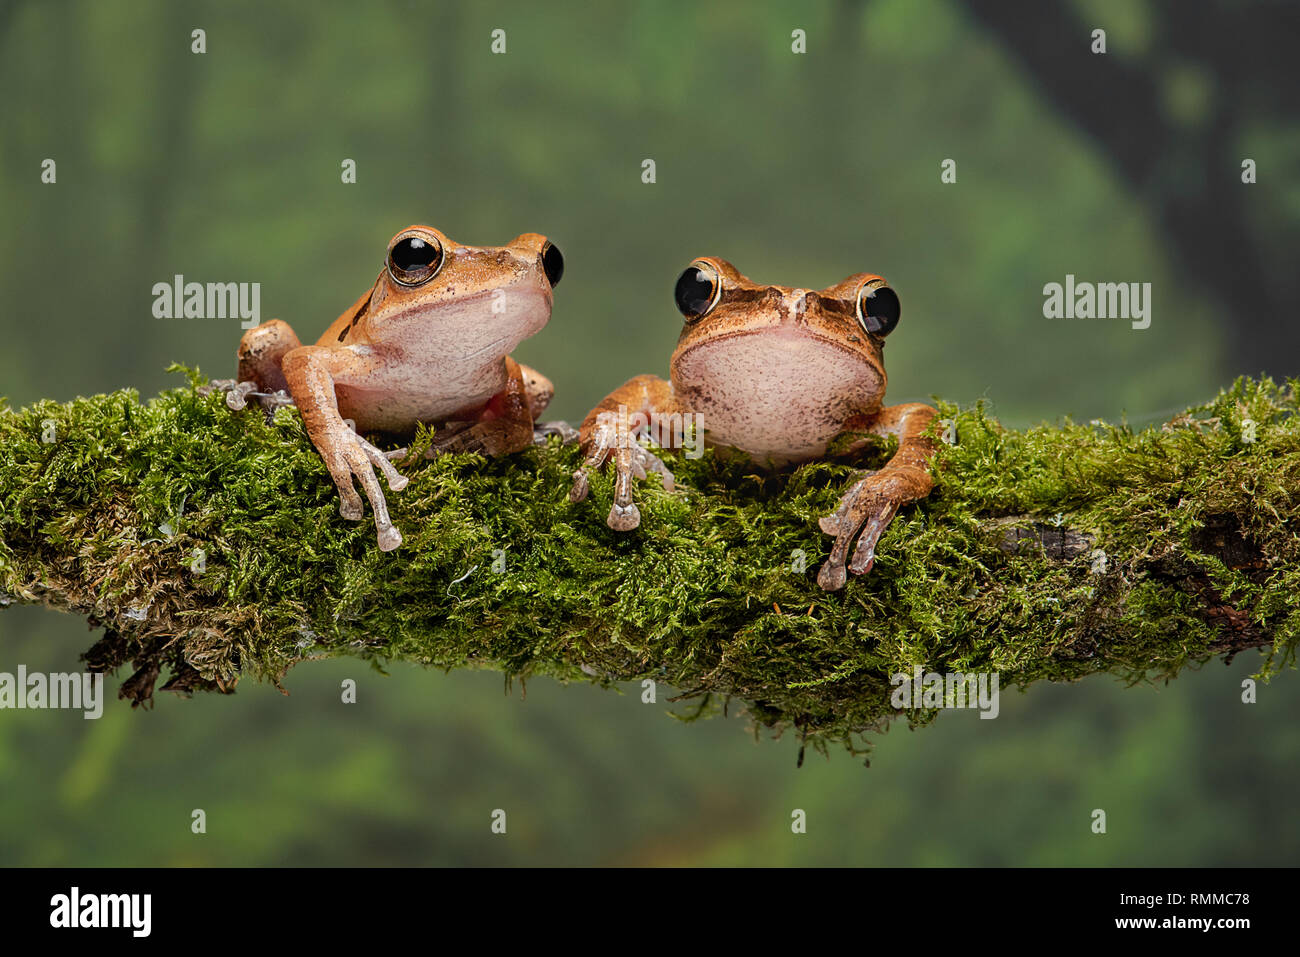 Eine Nahaufnahme stdy von ein paar Golden Tree frogs auf einem dicken Ast sitzend Flechten bedeckt Stockfoto